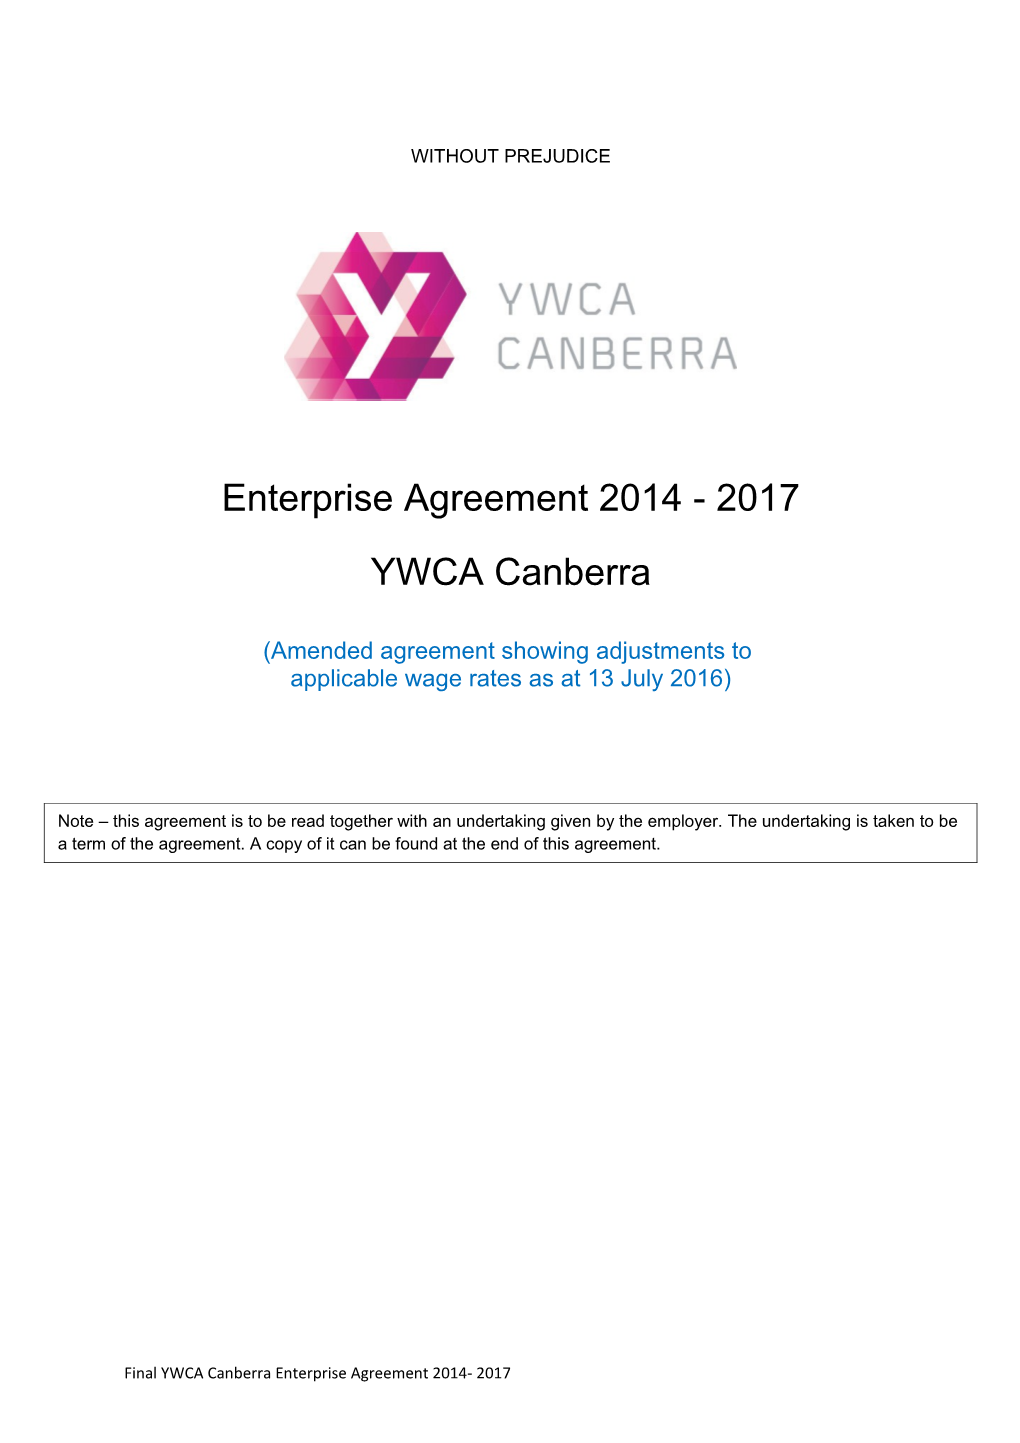 YWCA of Canberra